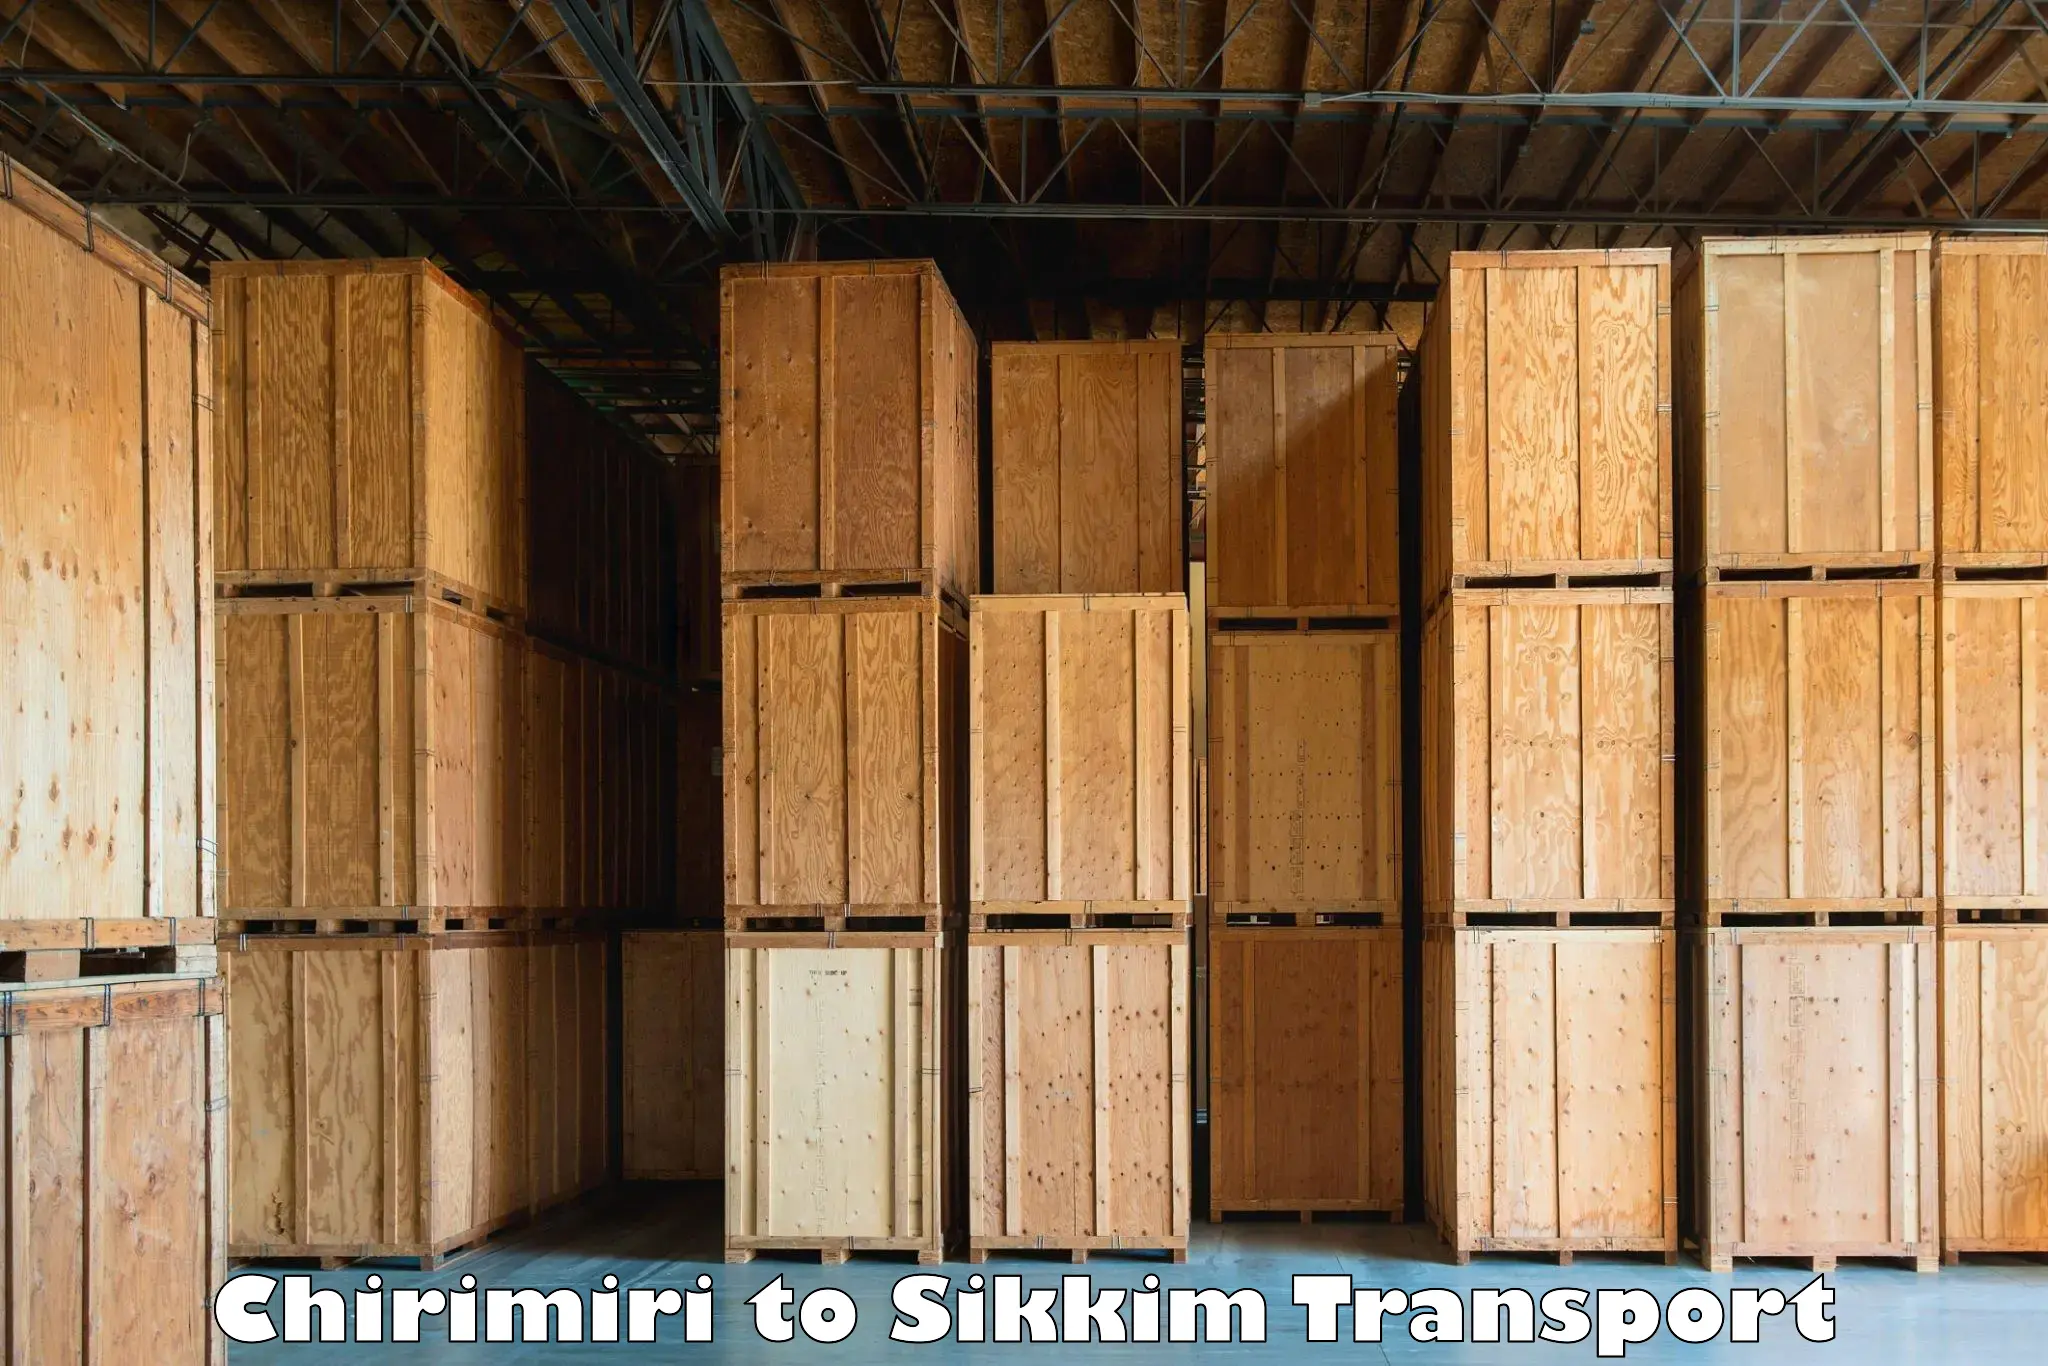 Transport in sharing Chirimiri to North Sikkim